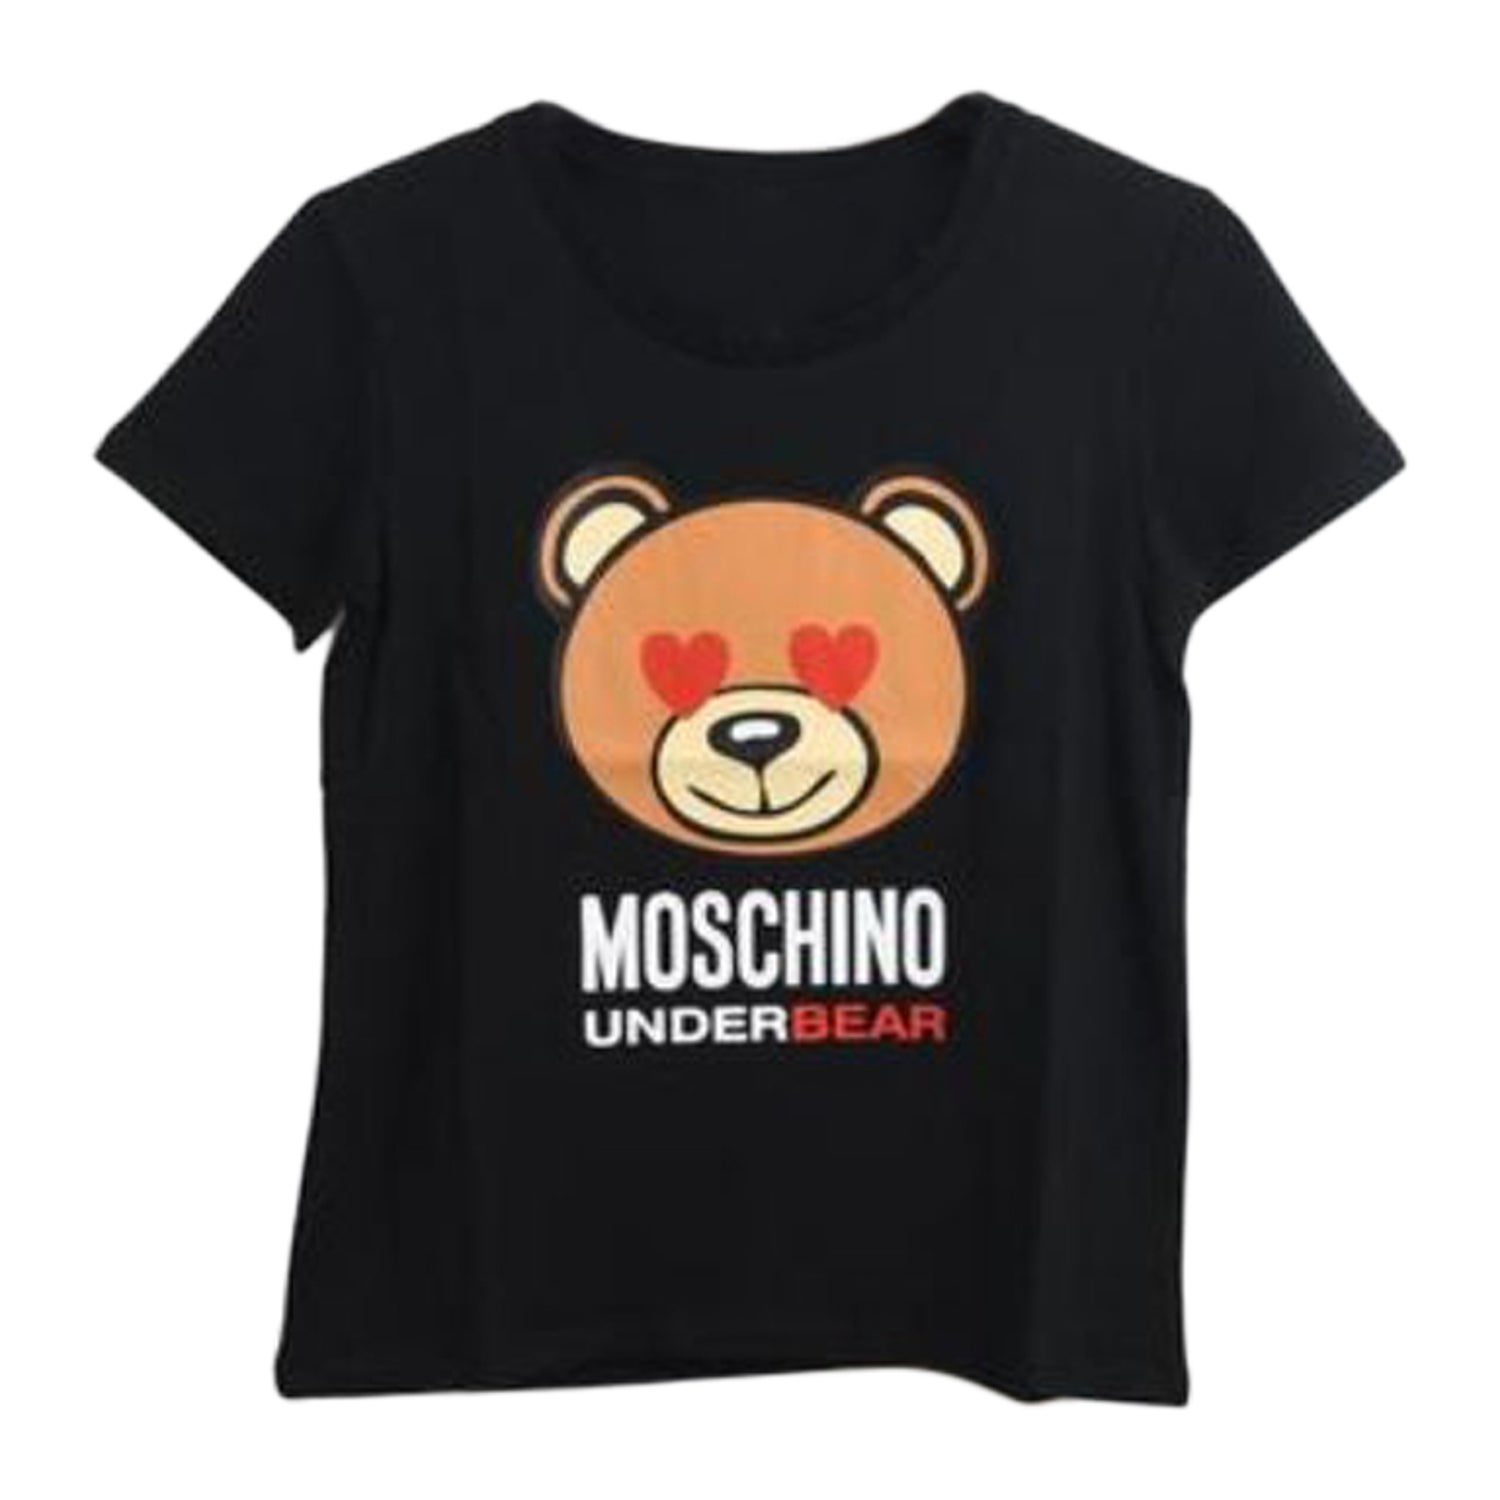 New Moschino Love Moschino Men's T-Shirt tee Size S-2XL 